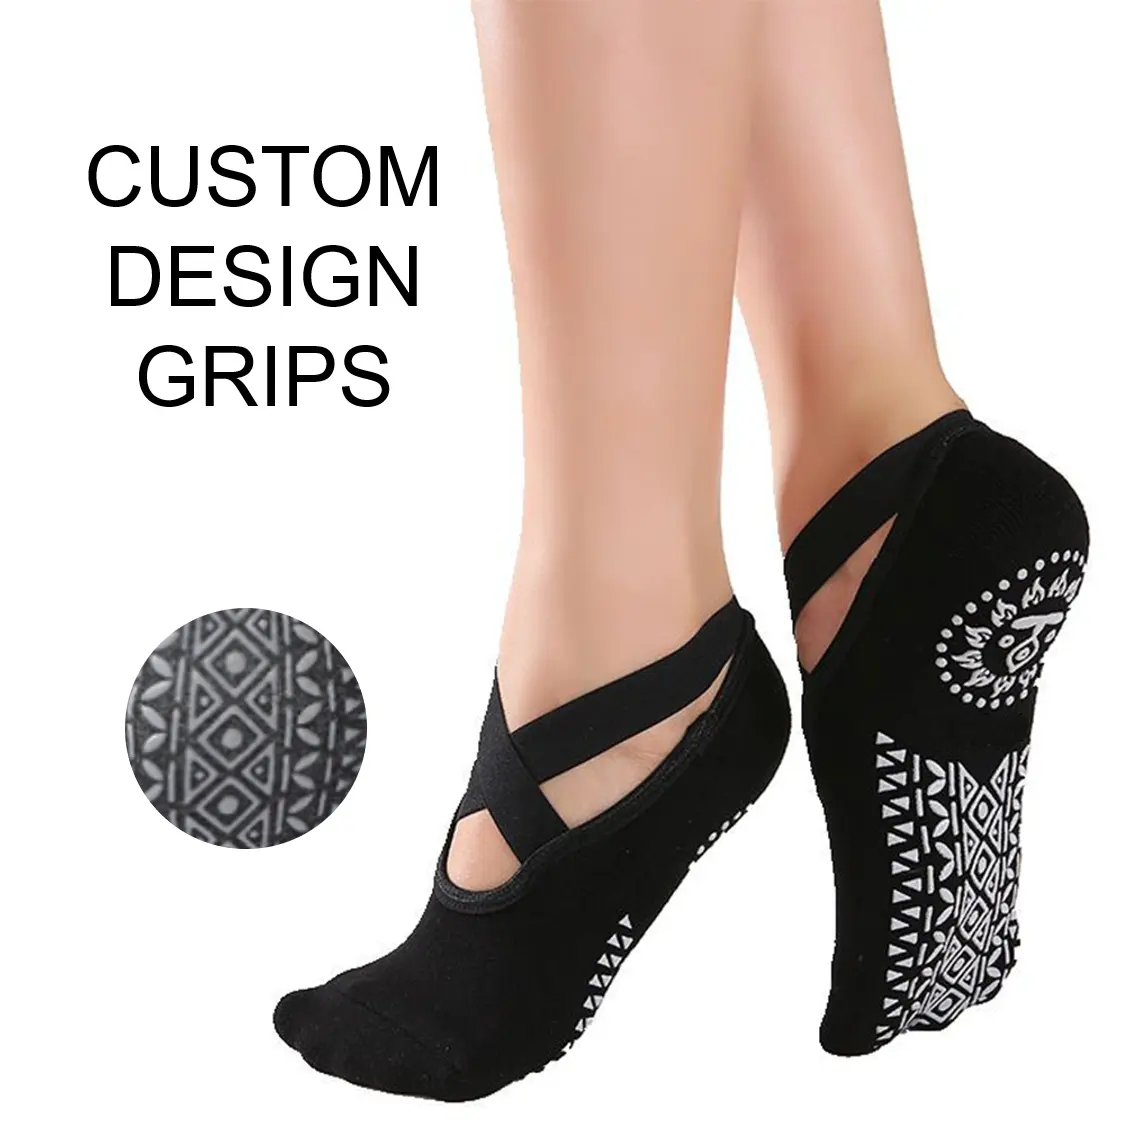 Özel logo spor ayak bileği çorap bayan tasarım yoga çorap kaymaz yoga çorap kadınlar için